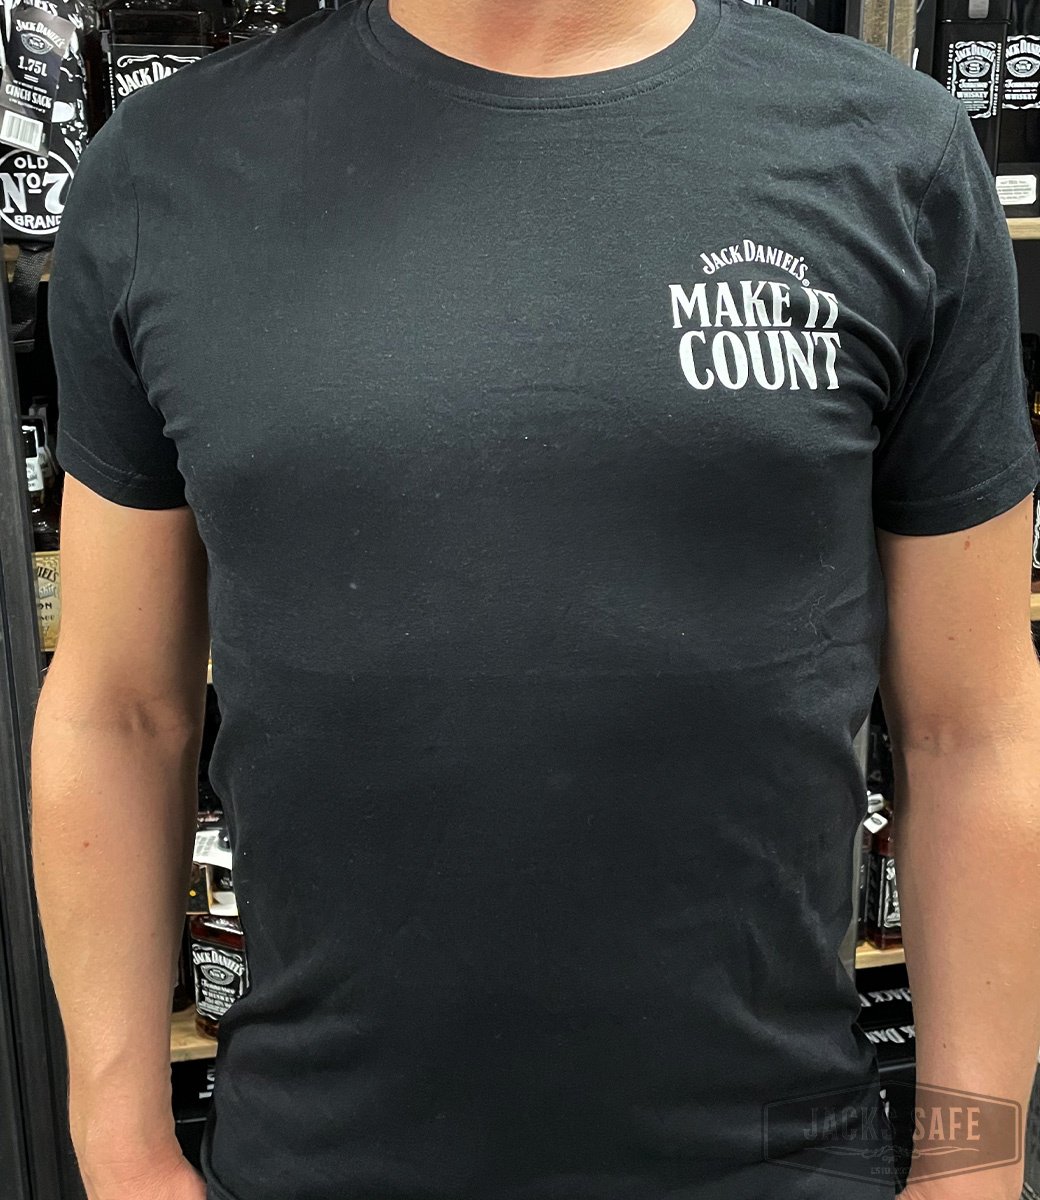 JACK DANIEL'S - Promo Items - Make It Count - t-shirt - Size L